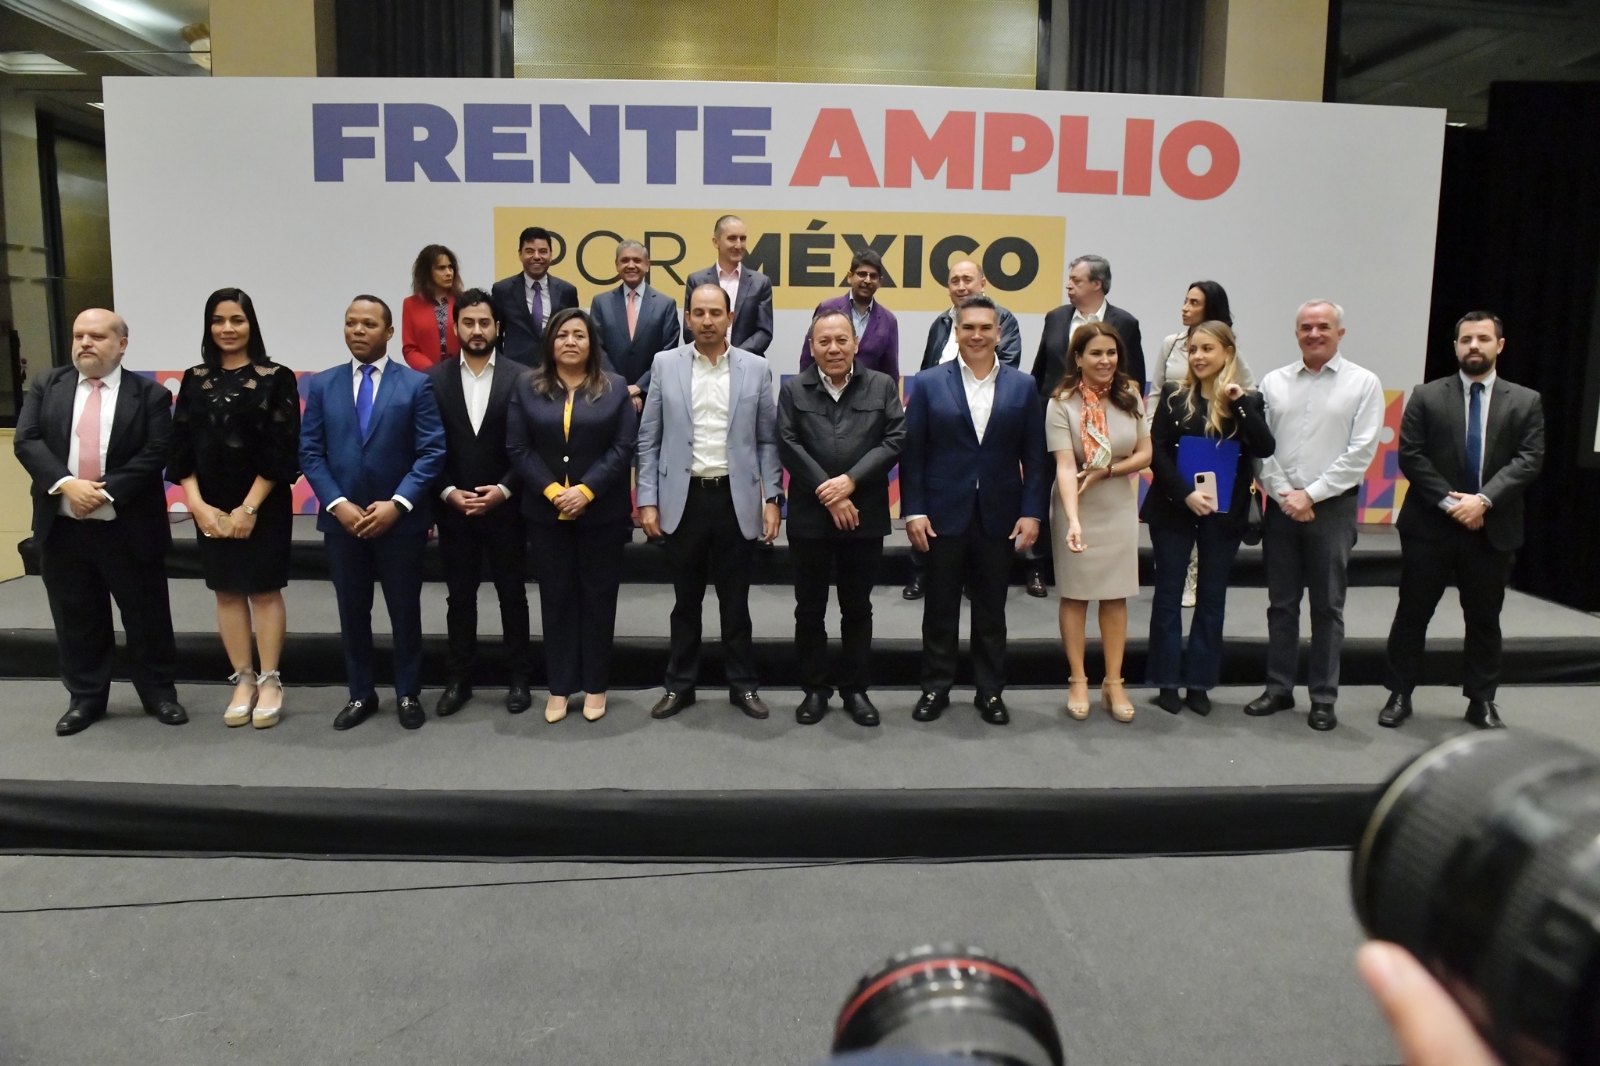 Frente Amplio por México expone detalles sobre selección de su representante